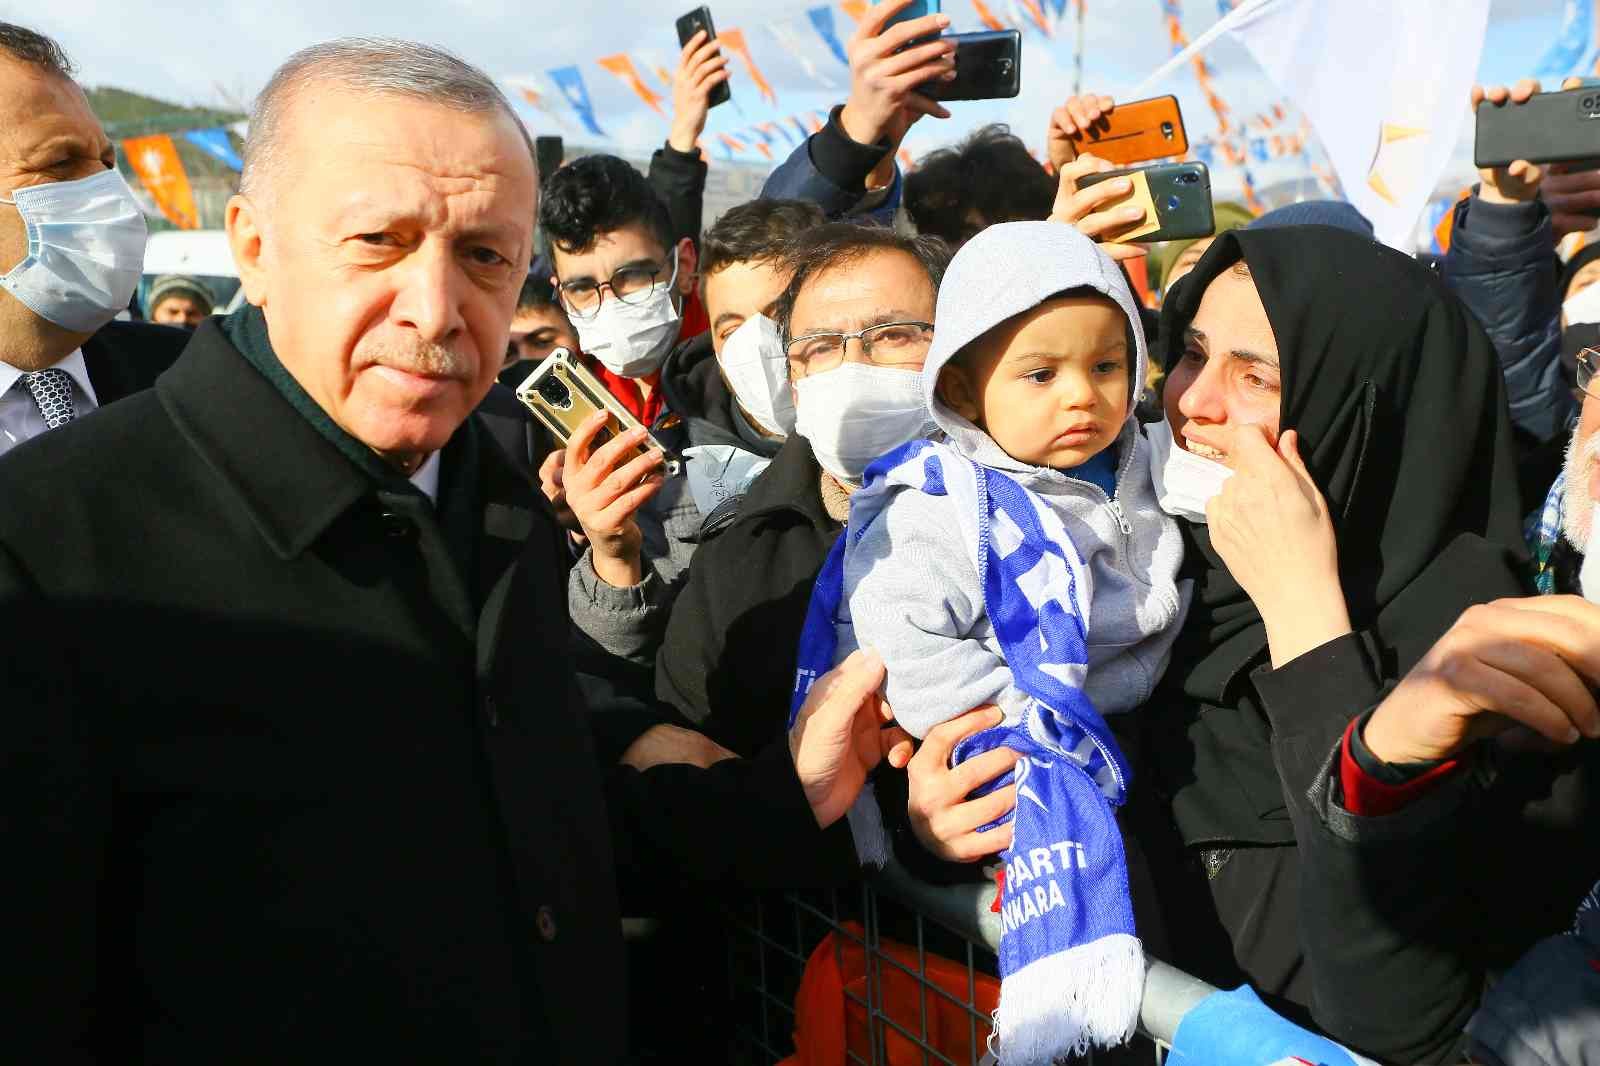 Cumhurbaşkanı Erdoğan, Kızılcahamam’da coşkuyla karşılandı #ankara